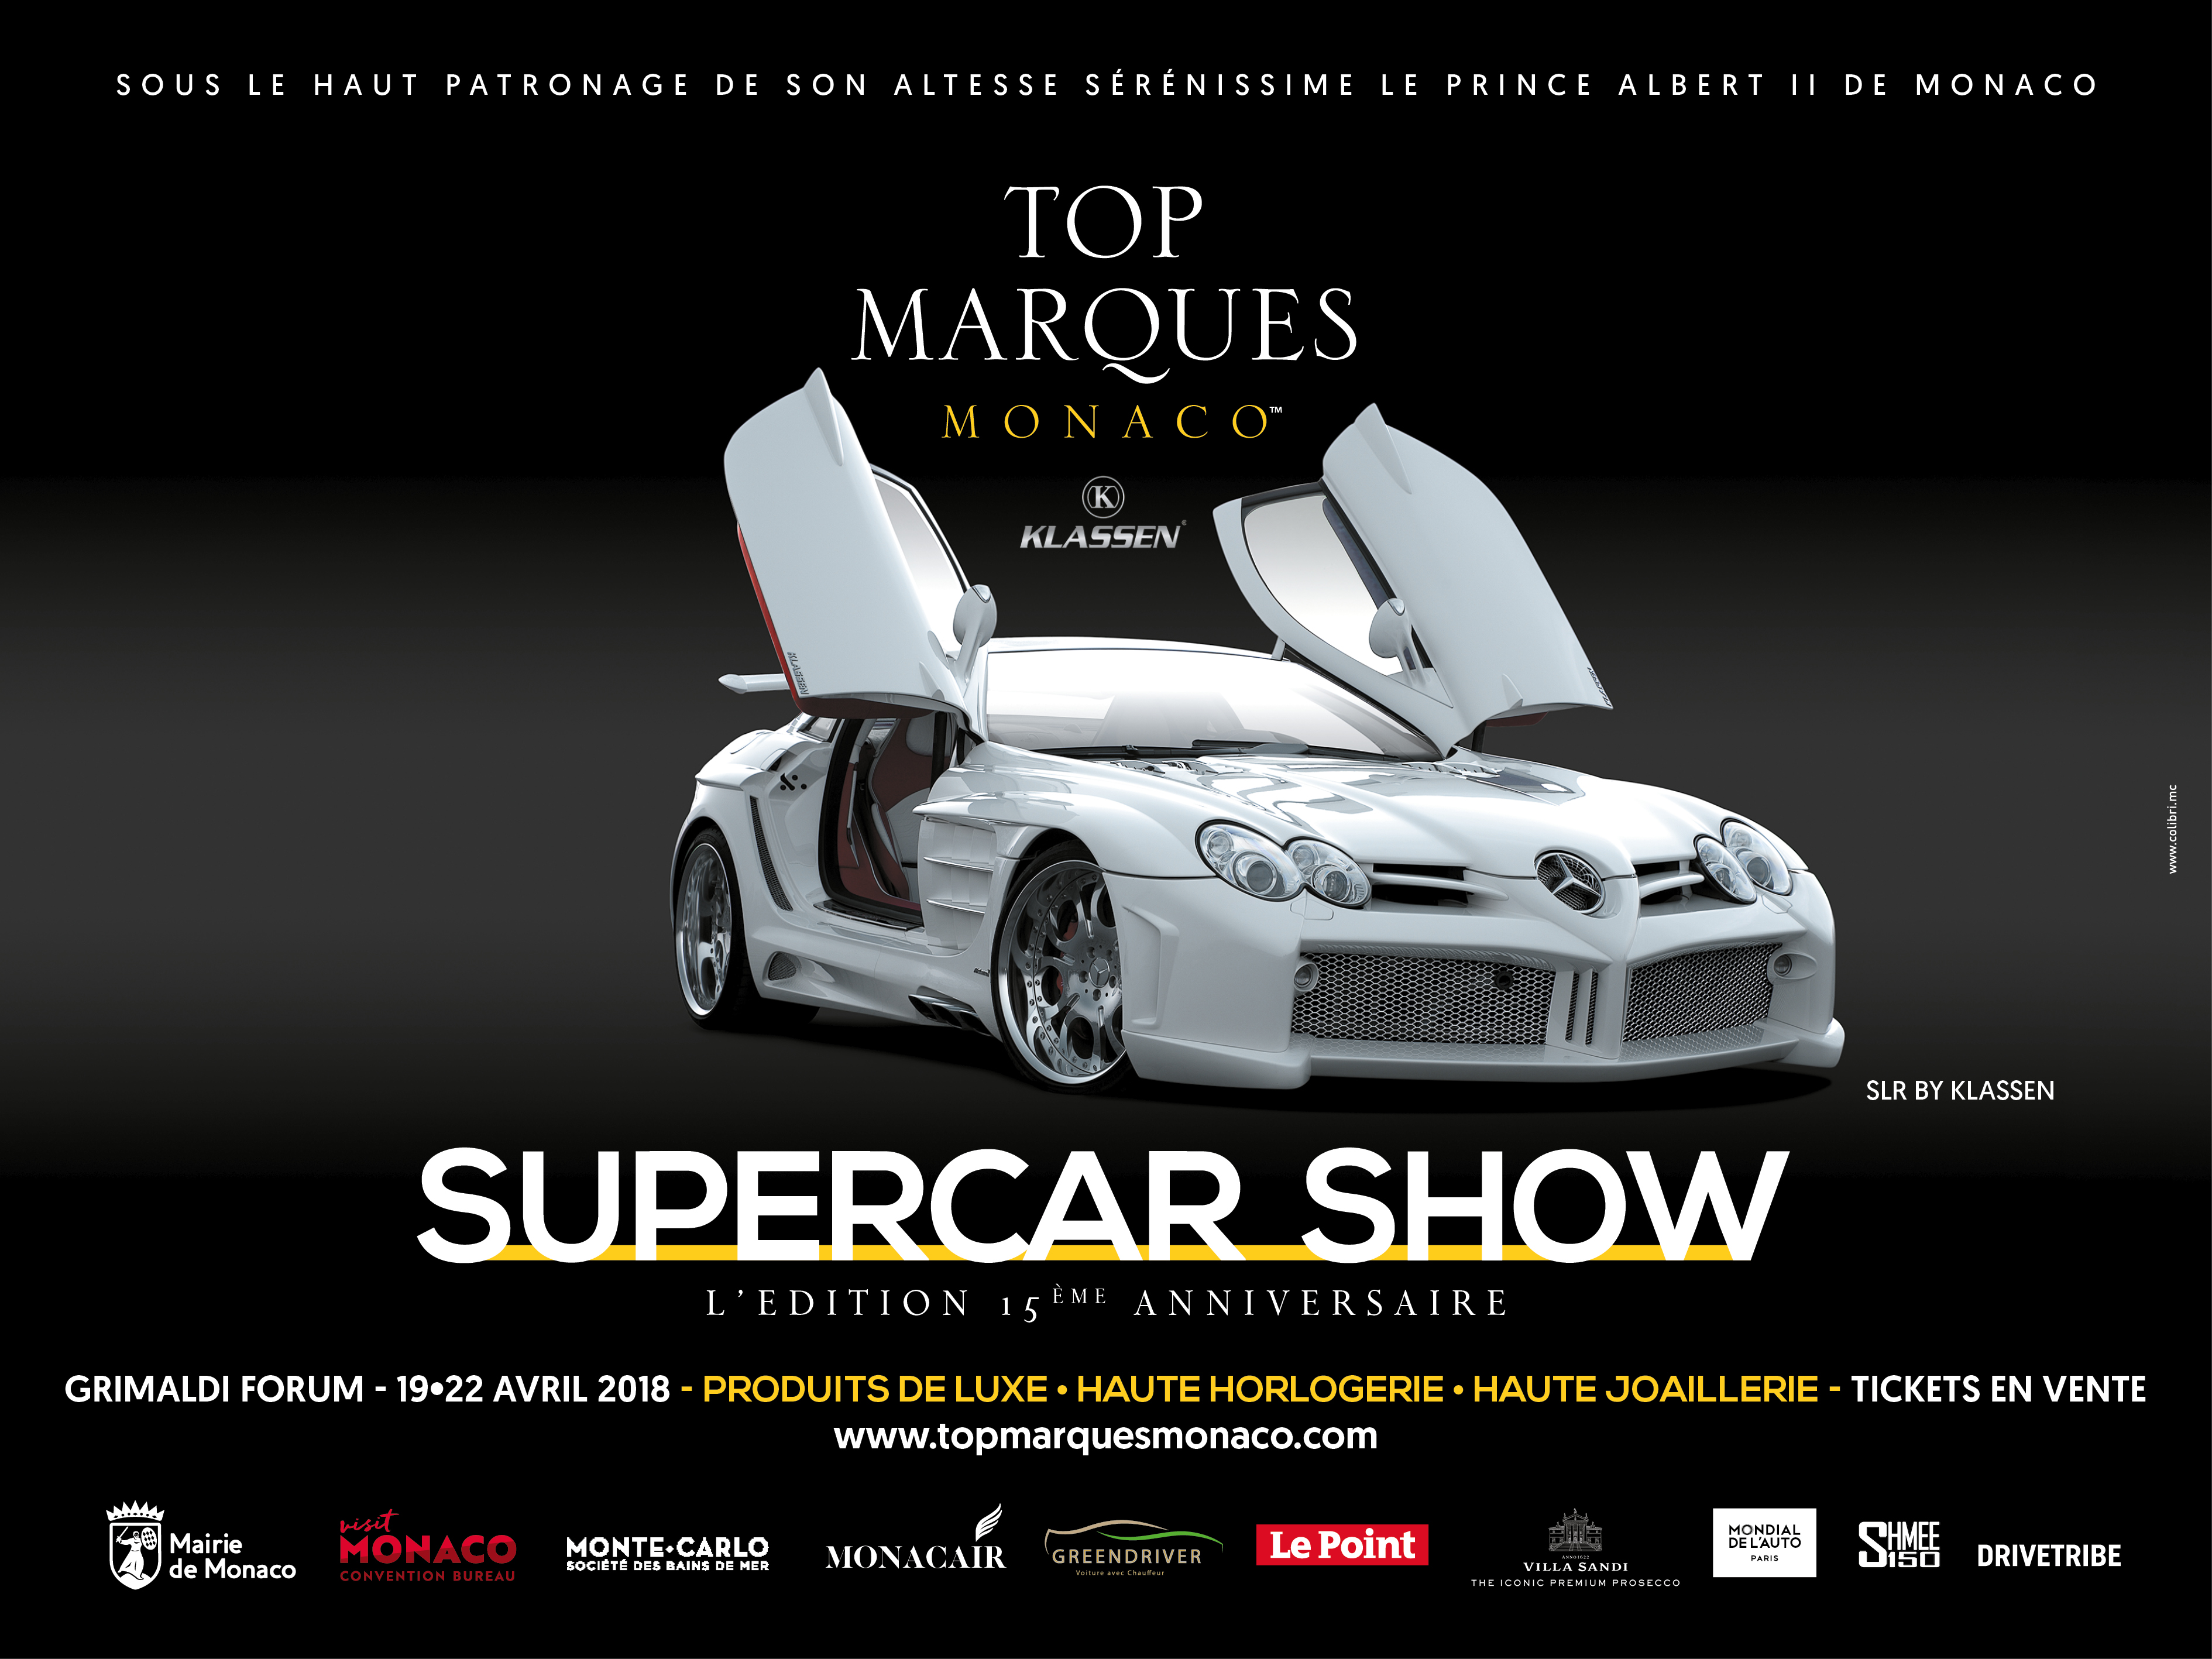 Top marques monaco - Top Marques - Agence Colibri, Design - Campagne d'affichage et communication évènementielle - 10